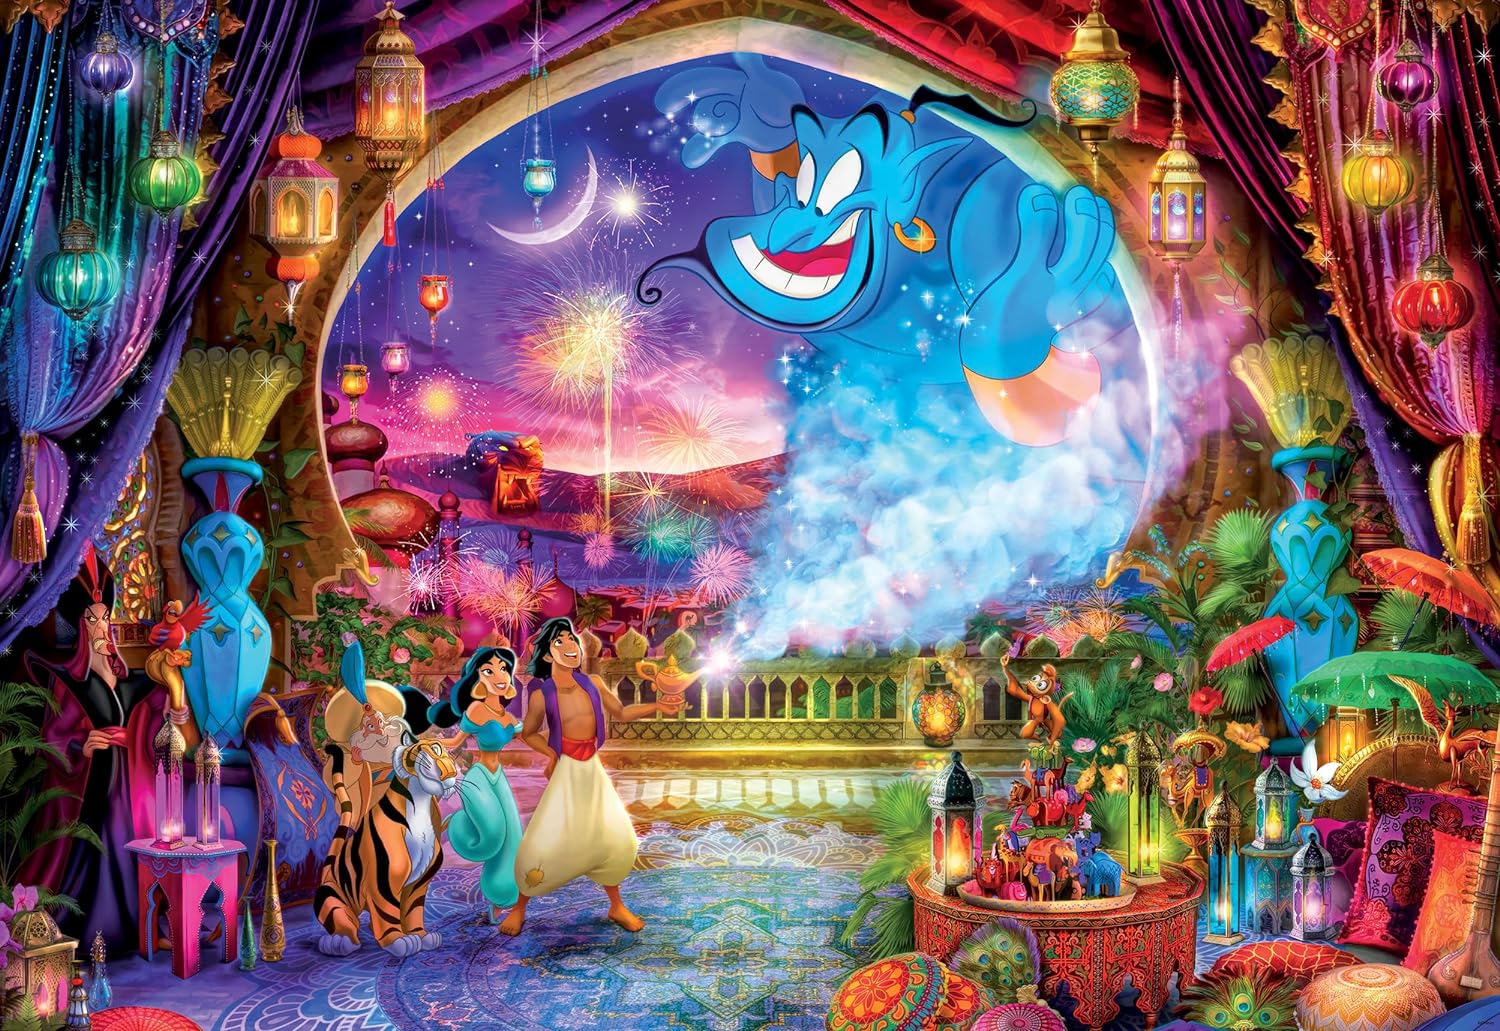 Puzzle 2000 Piezas | Disney Aladdin Ceaco